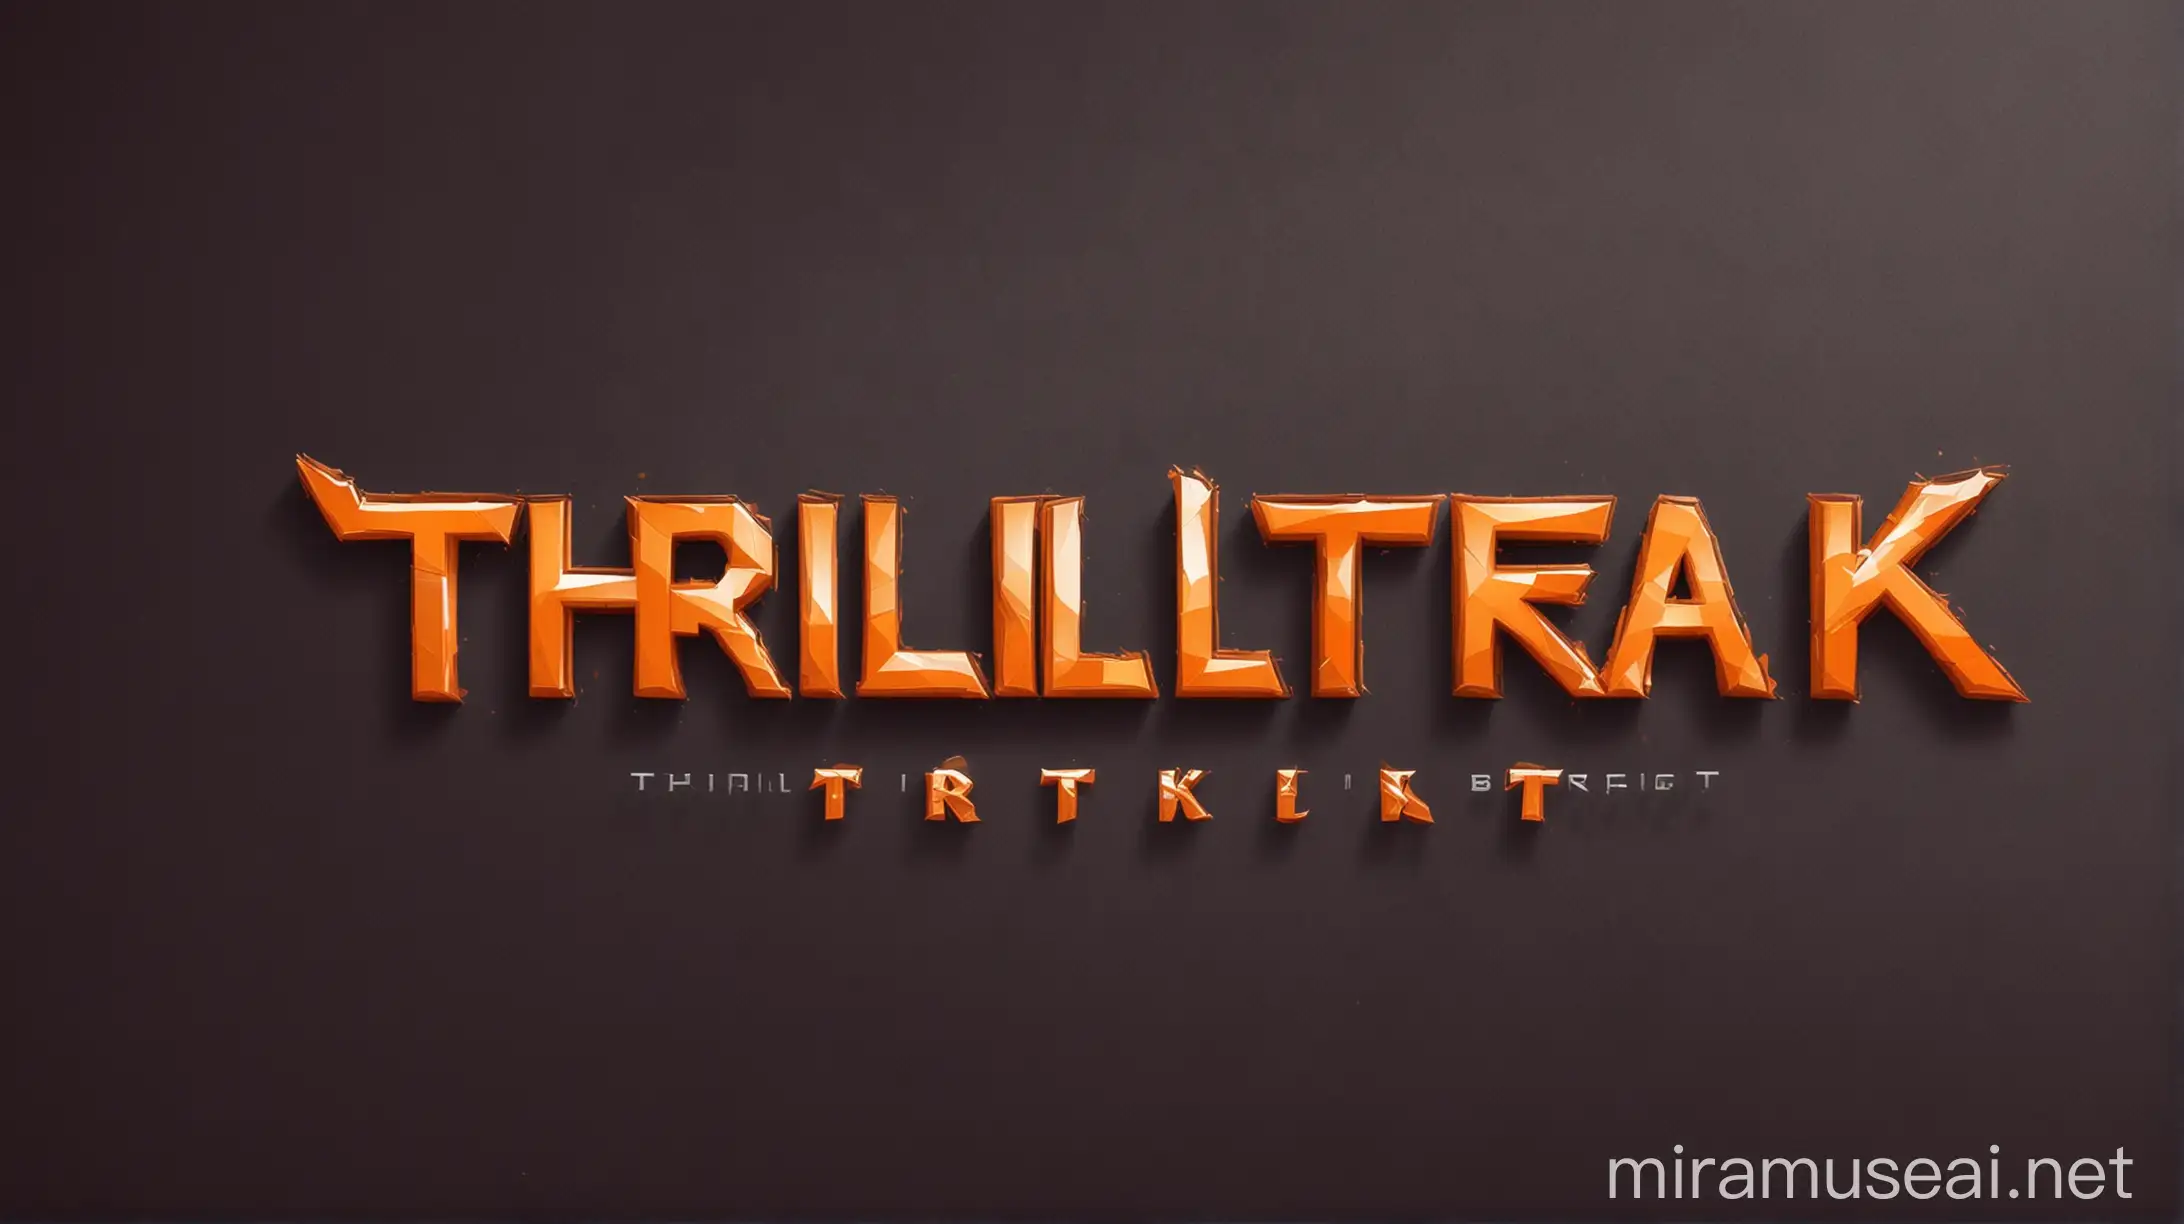 ThrillTrek Games Logo Design in Vibrant Orange Font Style